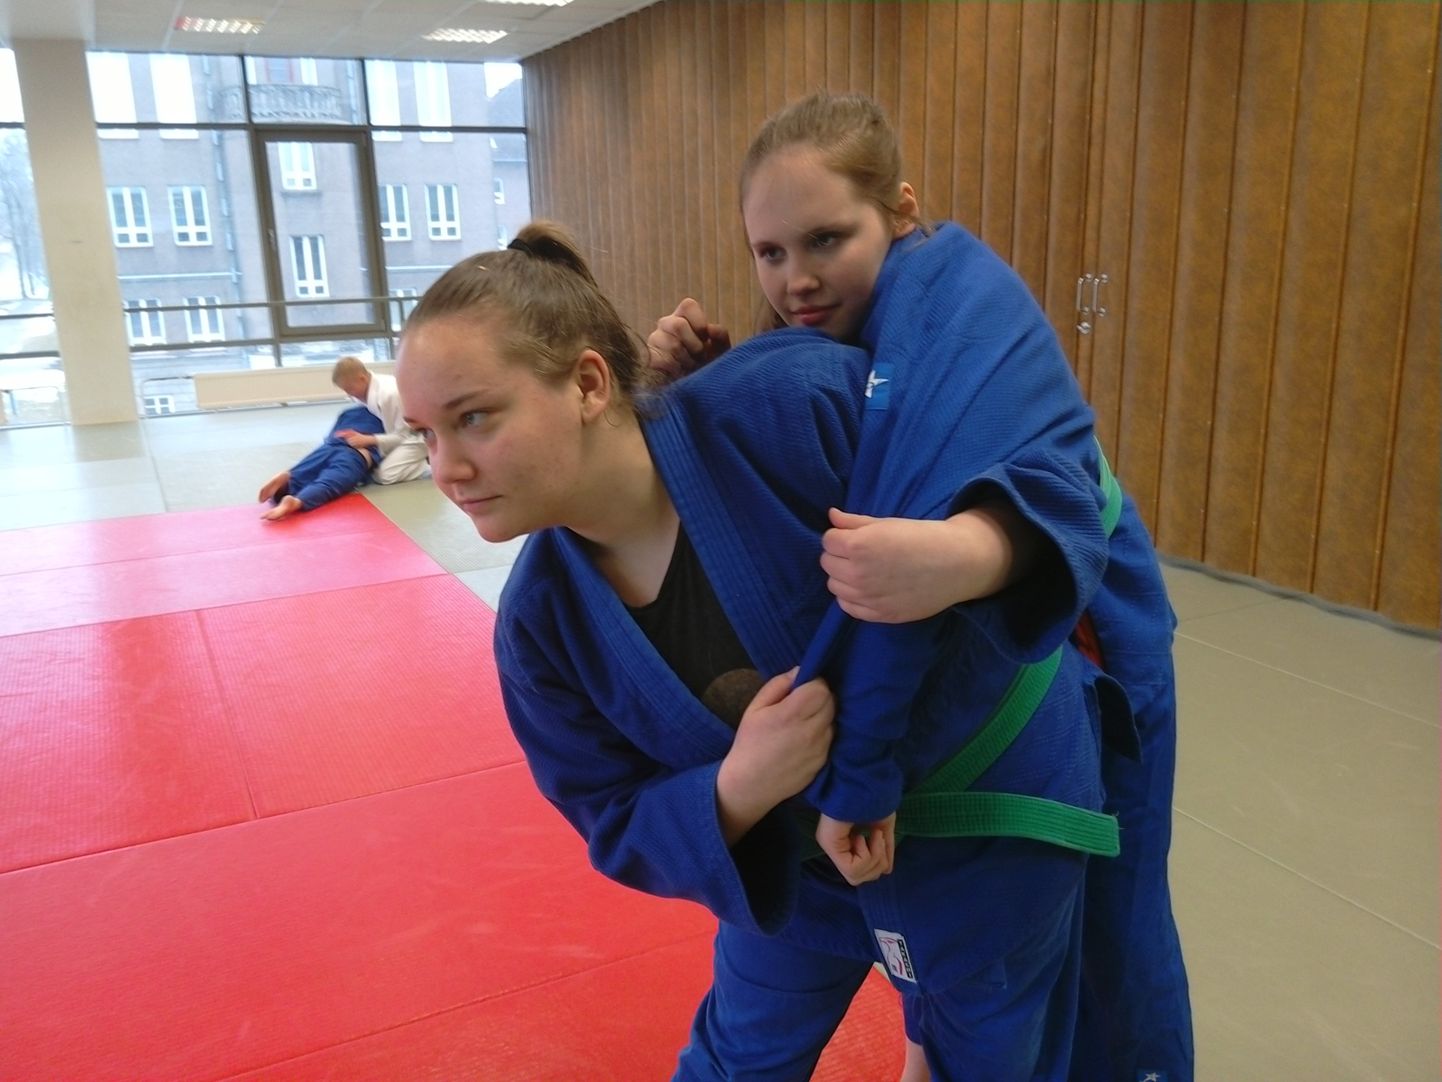 Sõbrannad ja treeningukaaslased Laura Silde ja Eliisabet Veermets teenisid mõlemad Eesti U-16 judomeistrivõistlustelt medali: Laura Silde (heitel) hõbeda ja Eliisabet Veermets (heidetav) pronksi.